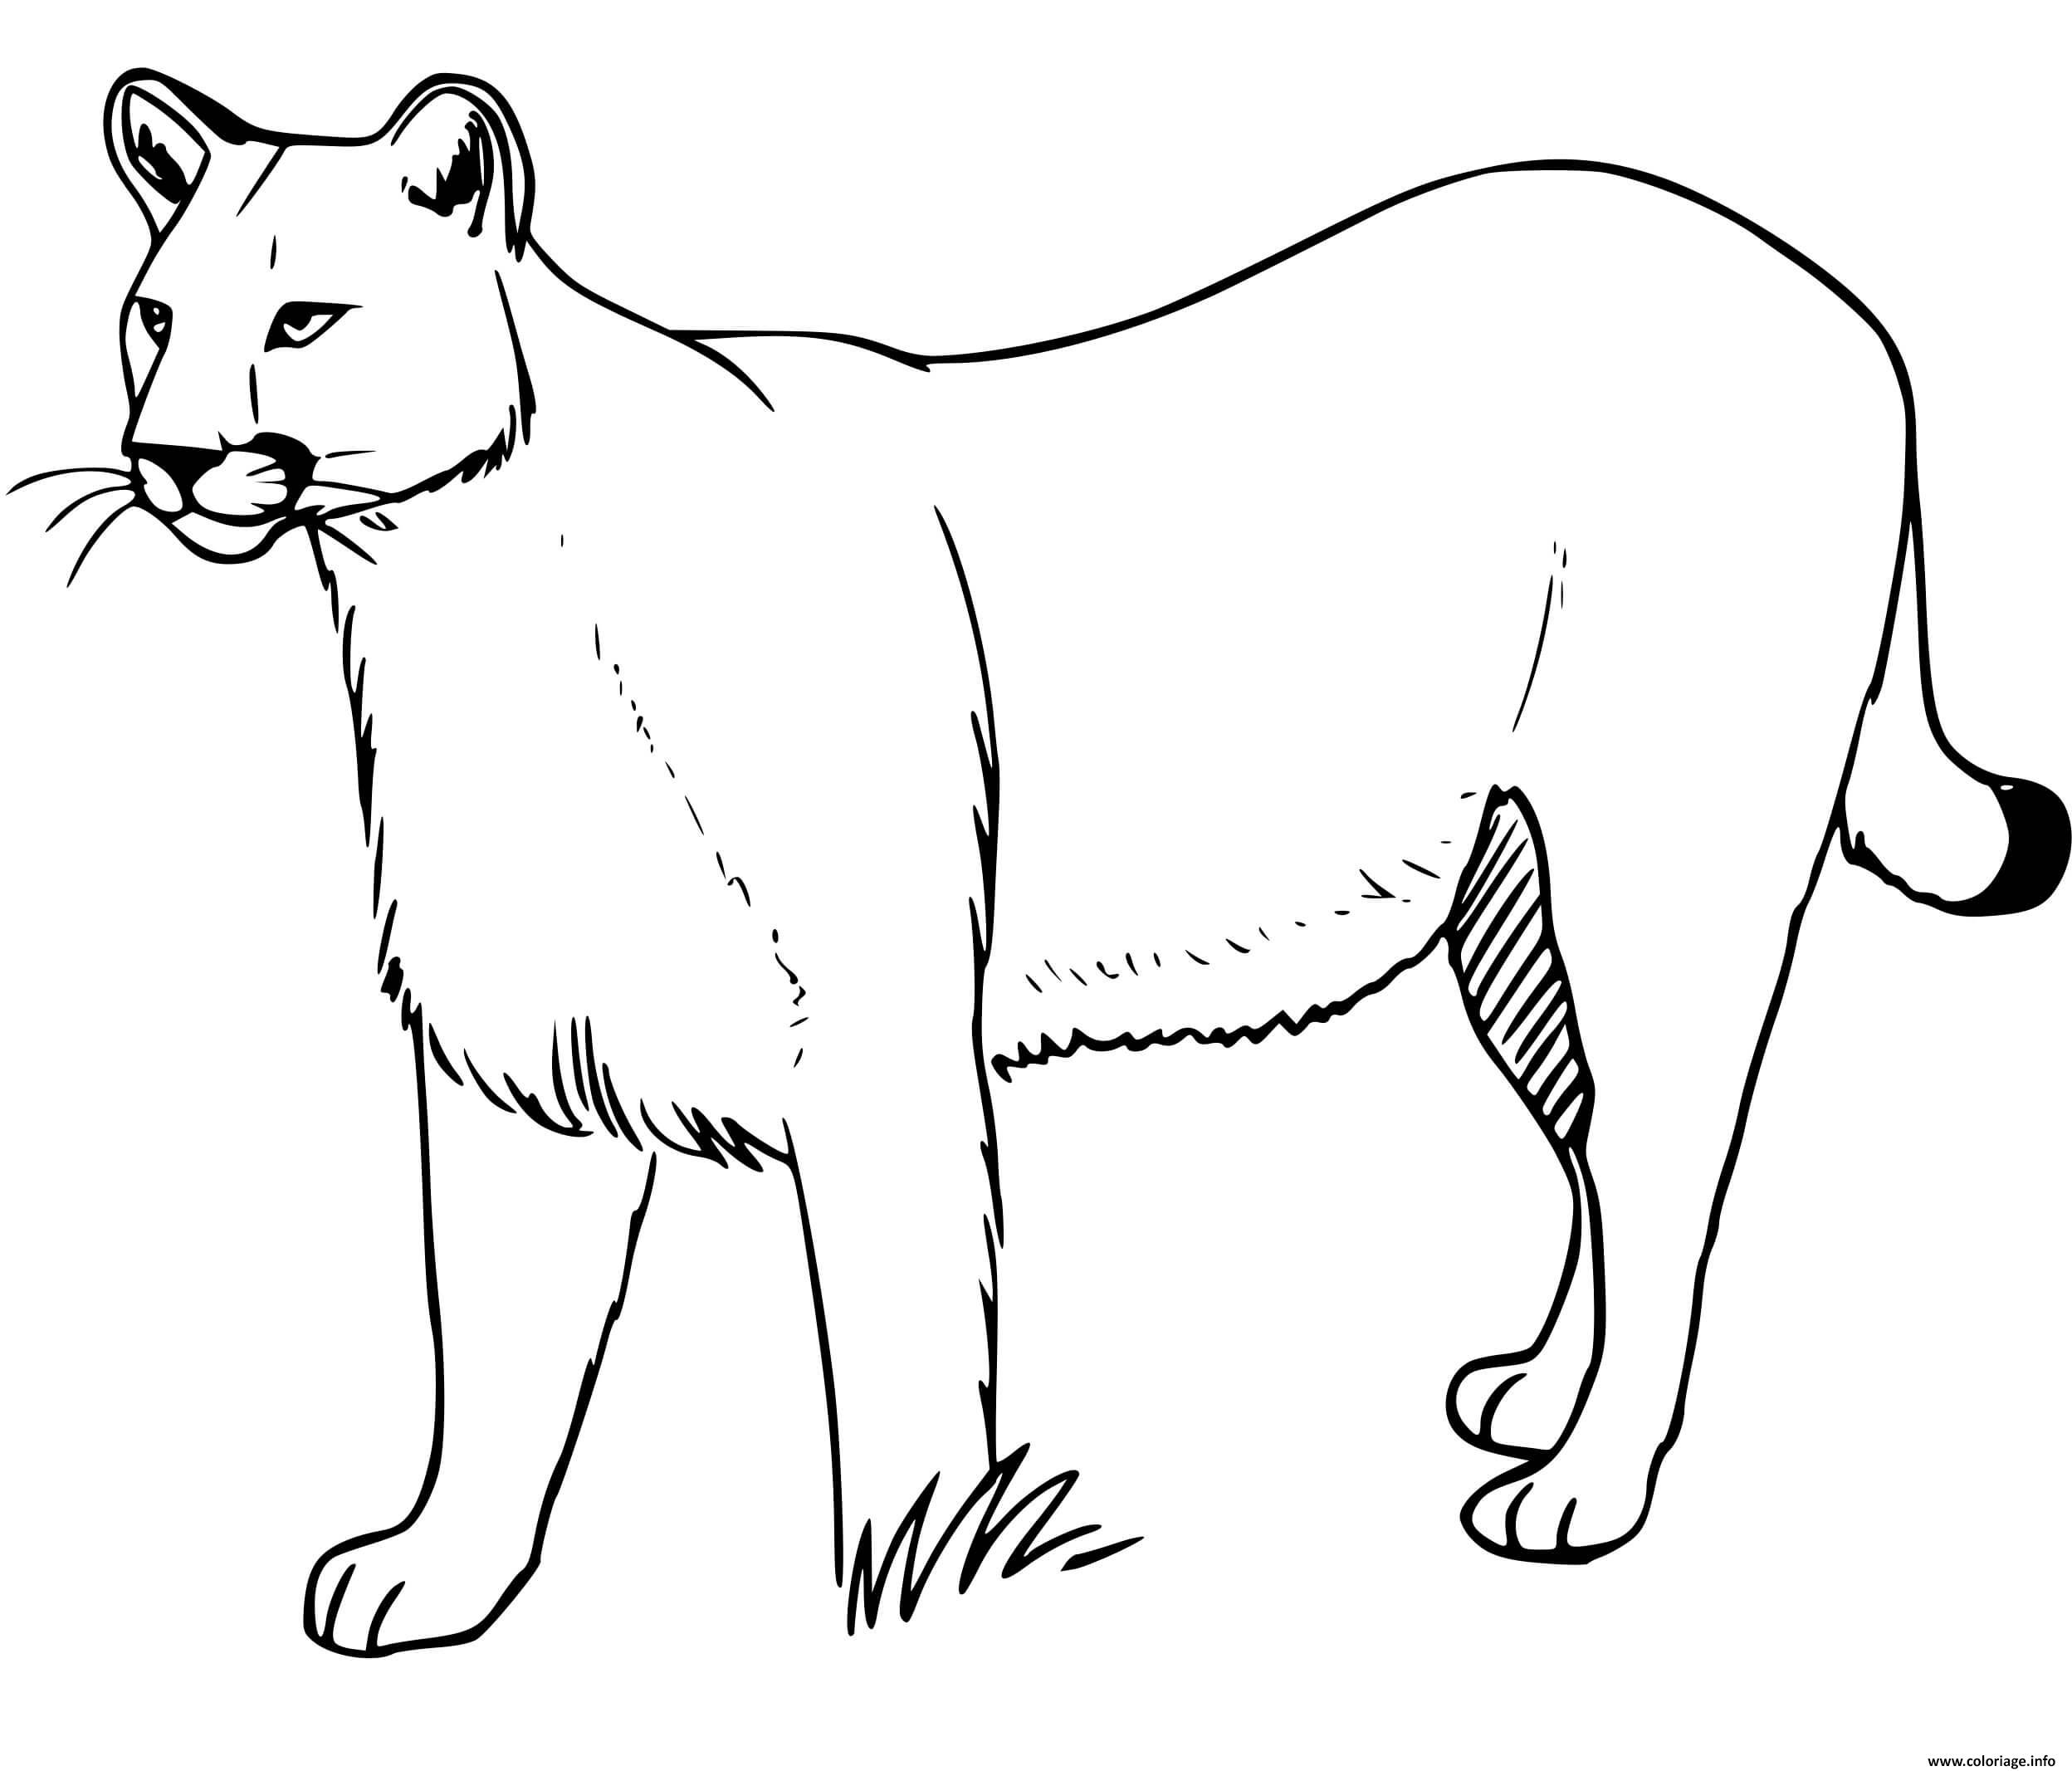 Dessin puma concolor grand chat nord et sud amerique Coloriage Gratuit à Imprimer